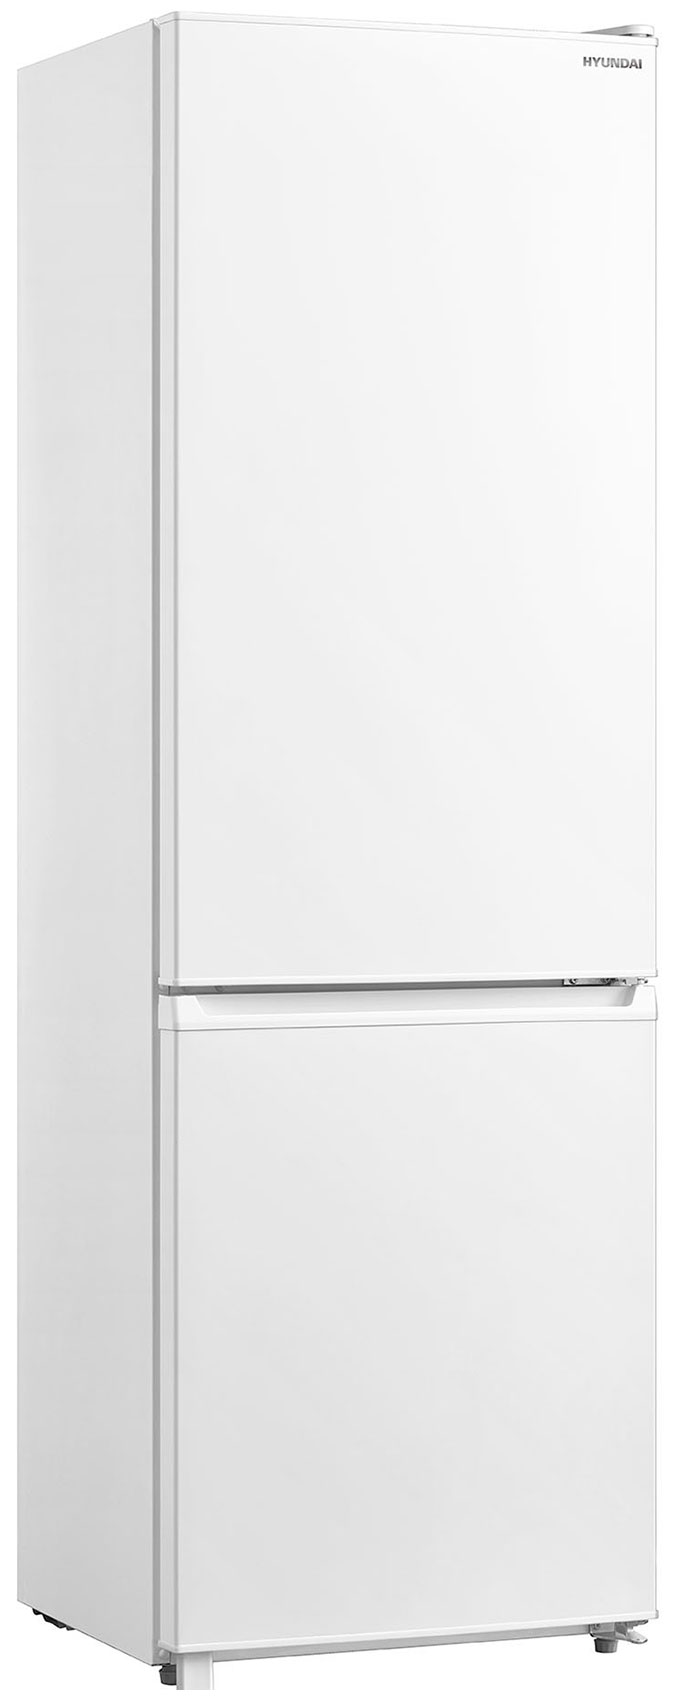 Двухкамерный холодильник Hyundai CC3091LWT белый двухкамерный холодильник hyundai cc3595fwt белый